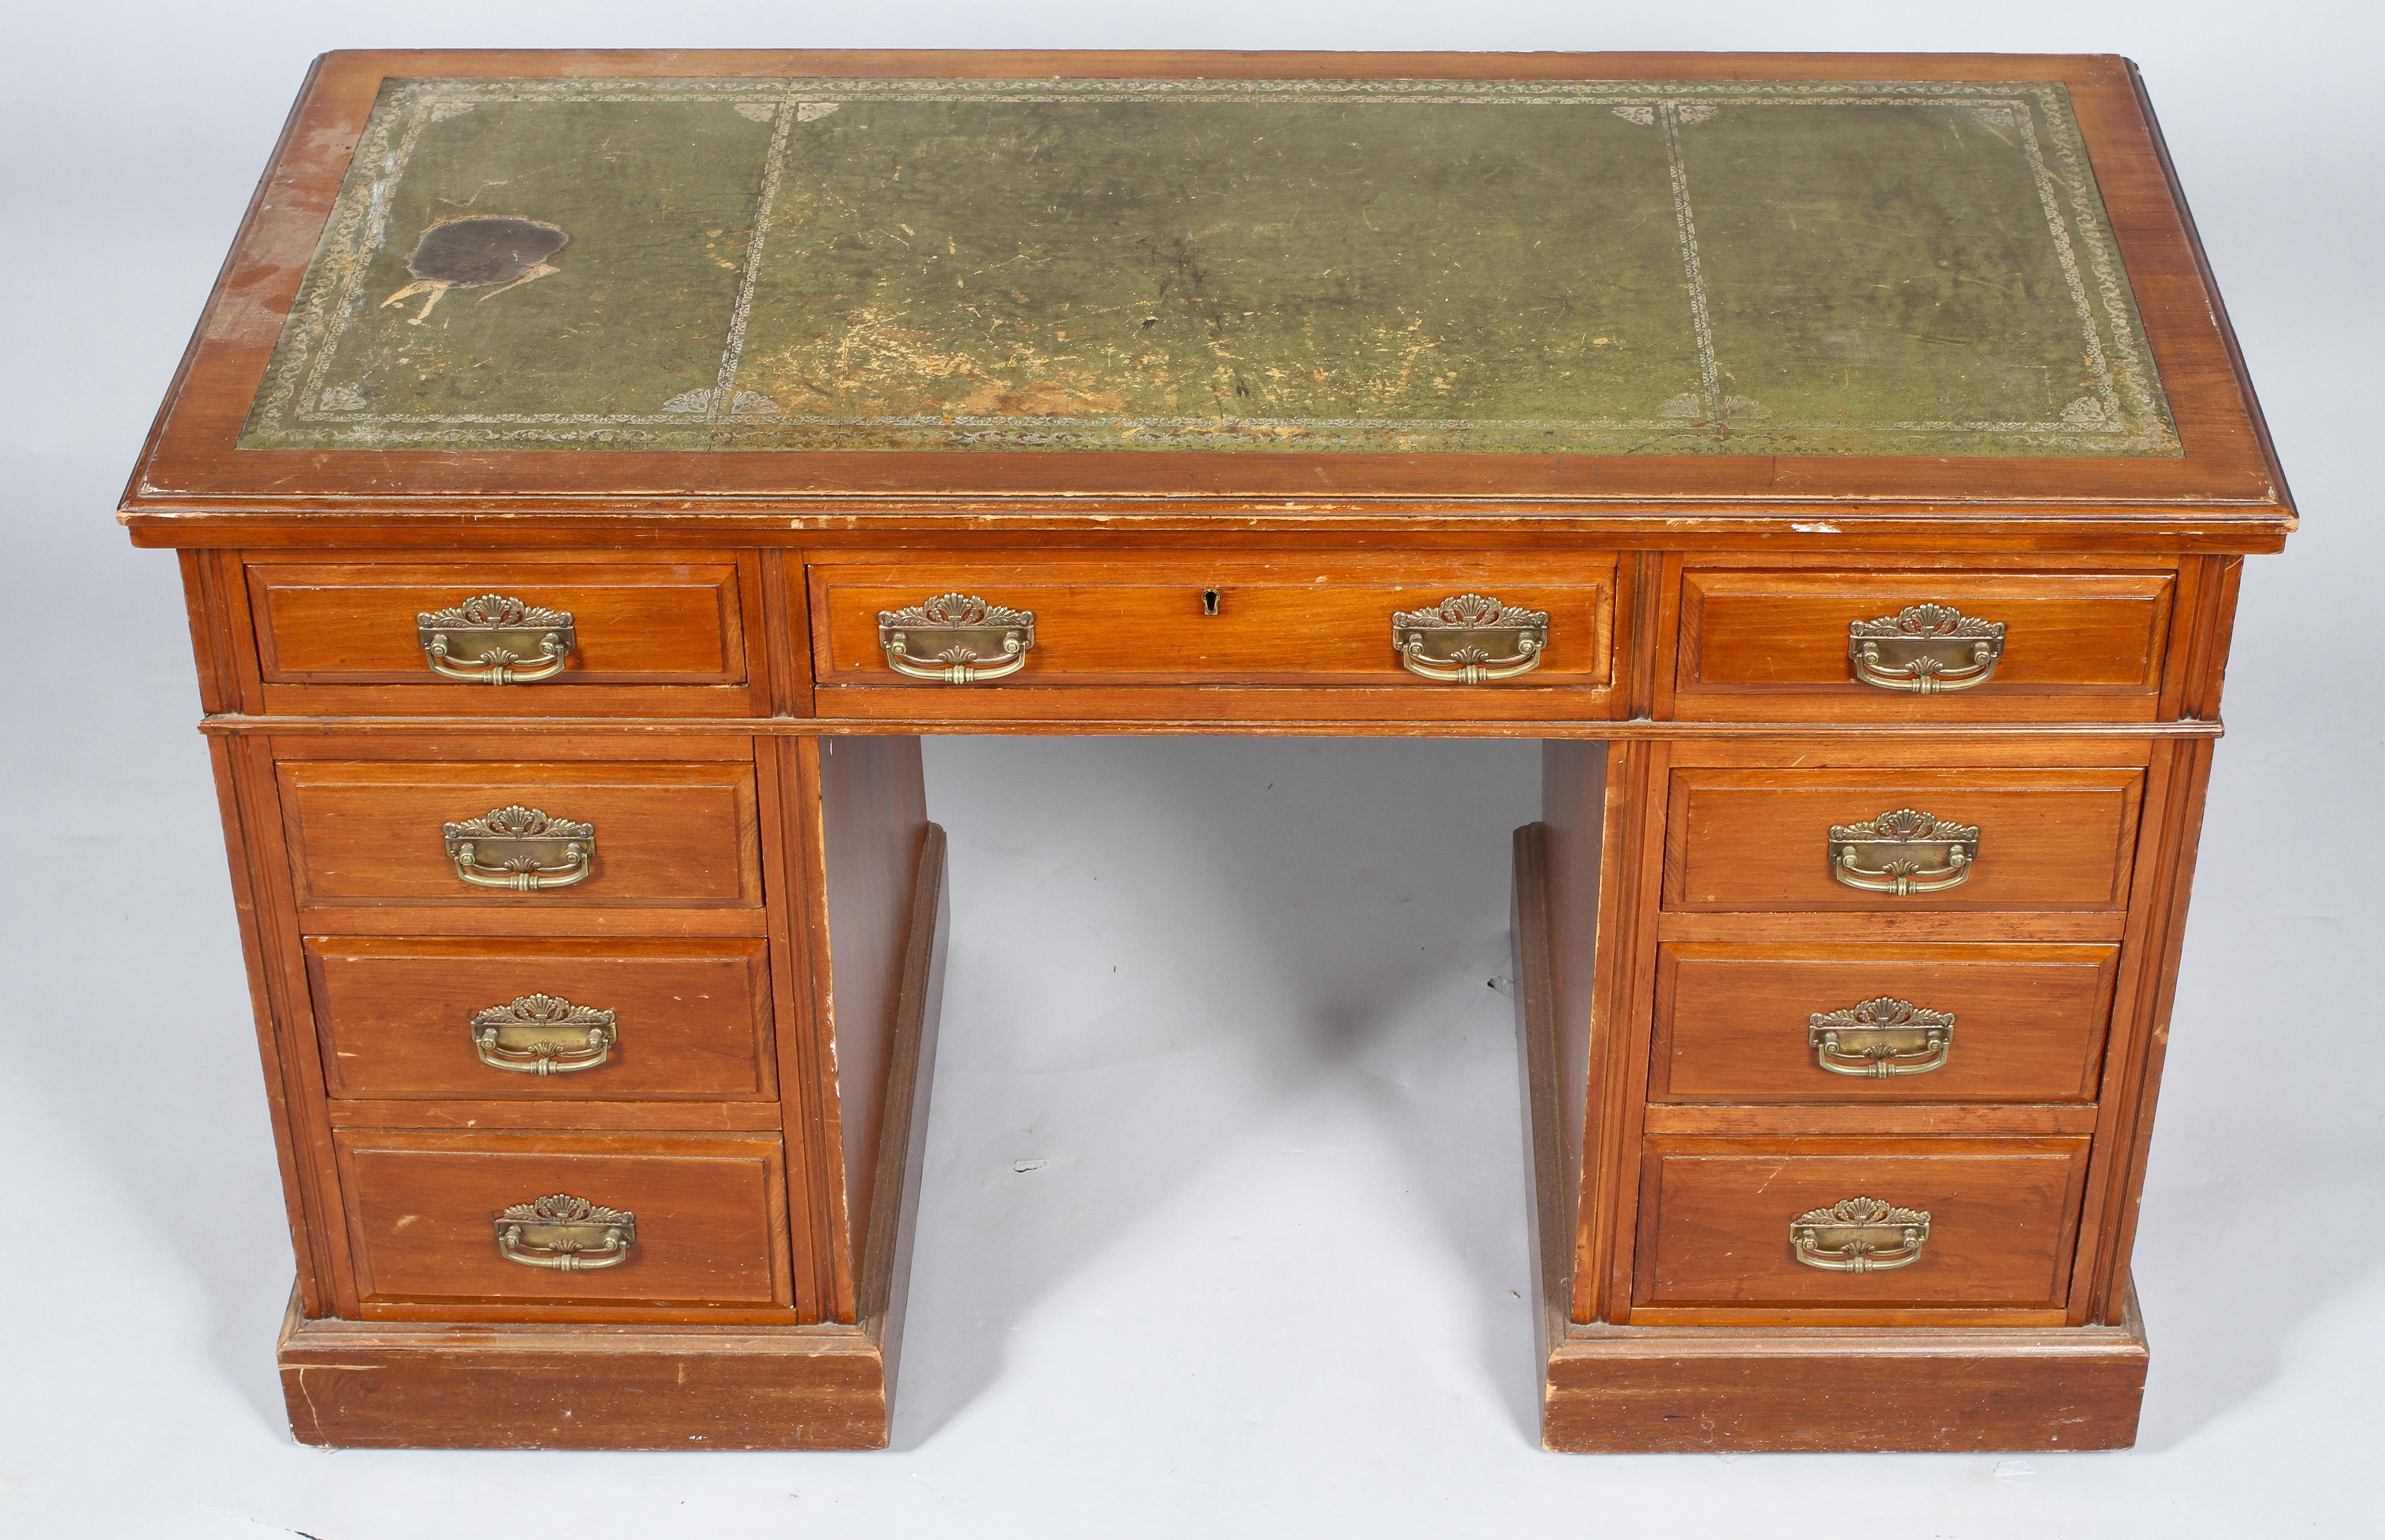 An Edwardian walnut kneehole desk, - Image 3 of 3